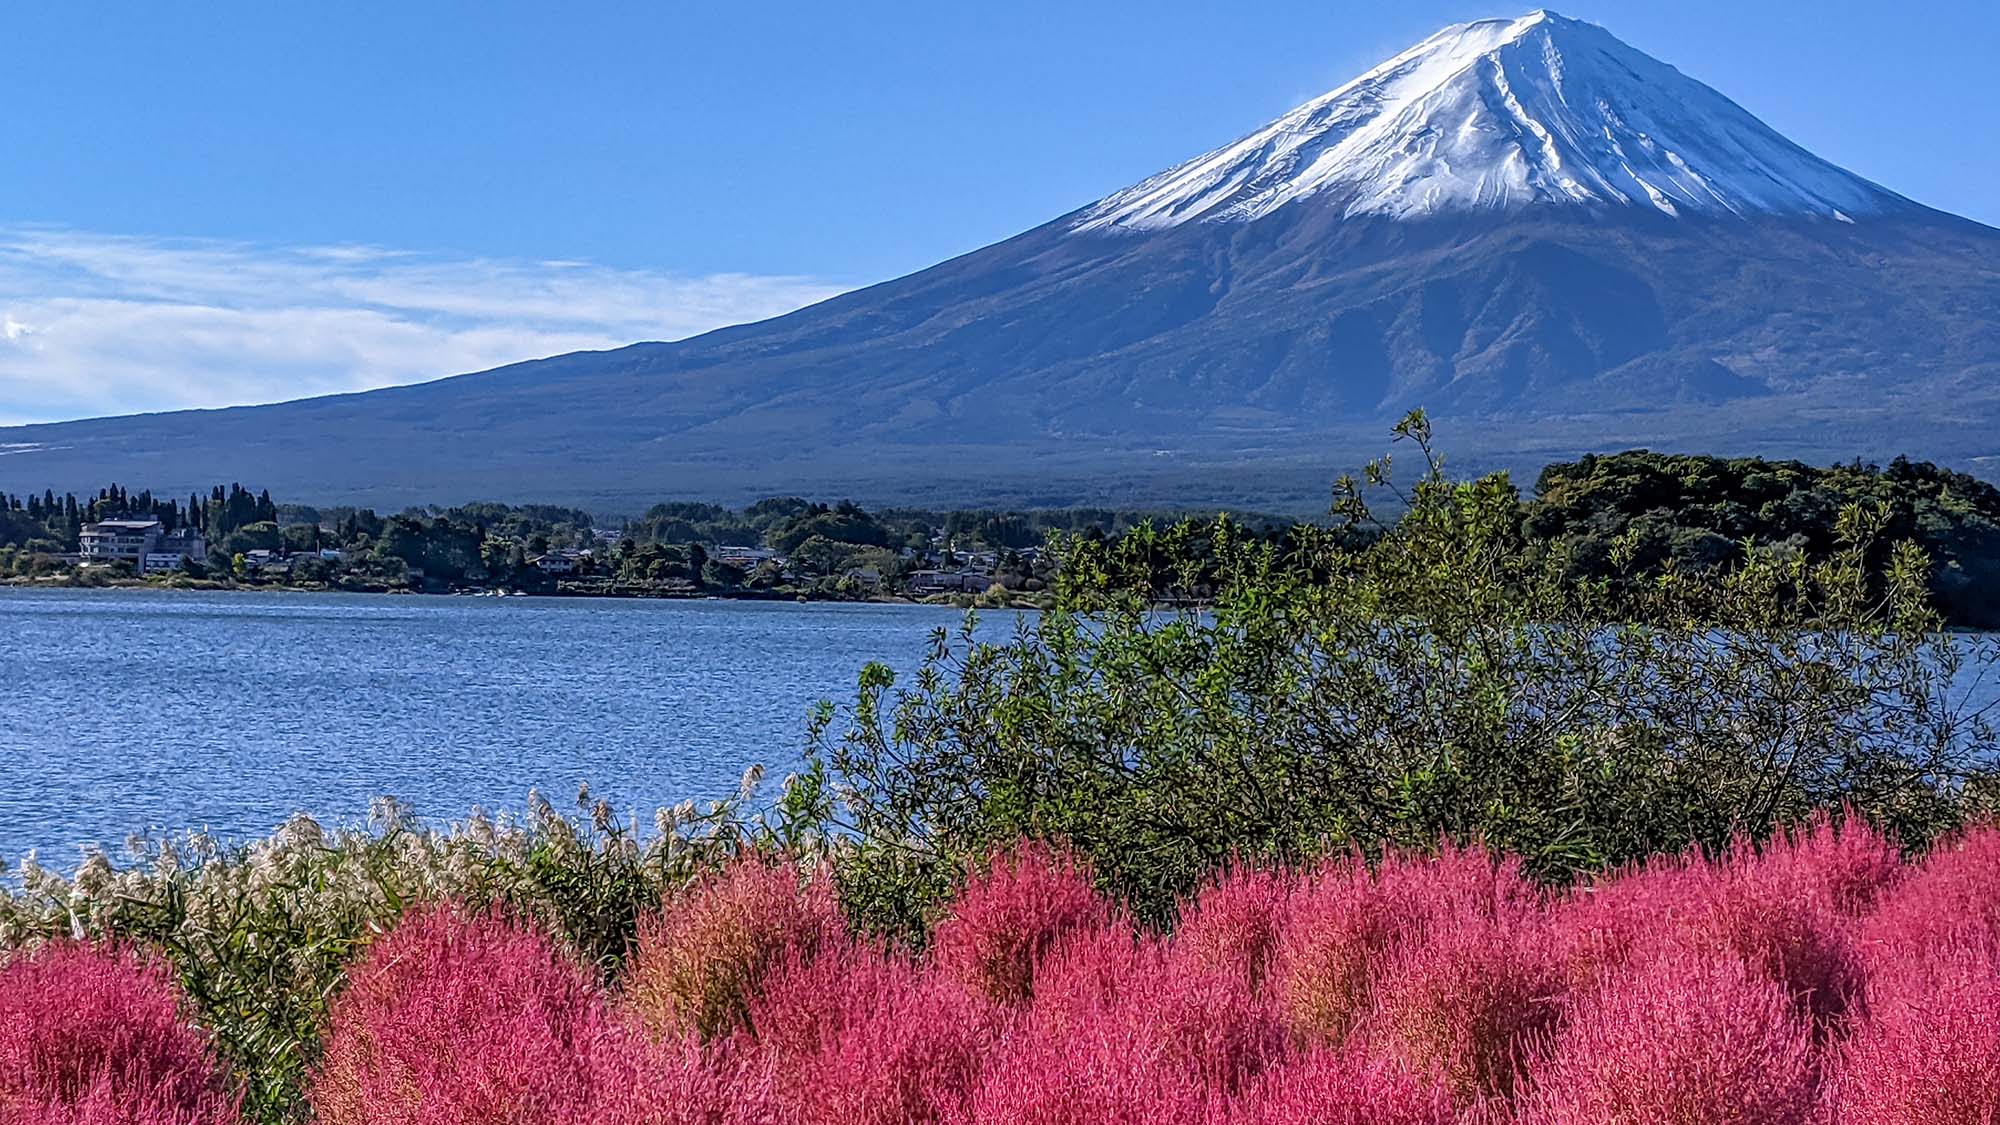 ・季節により様々な表情を見せる富士山と河口湖